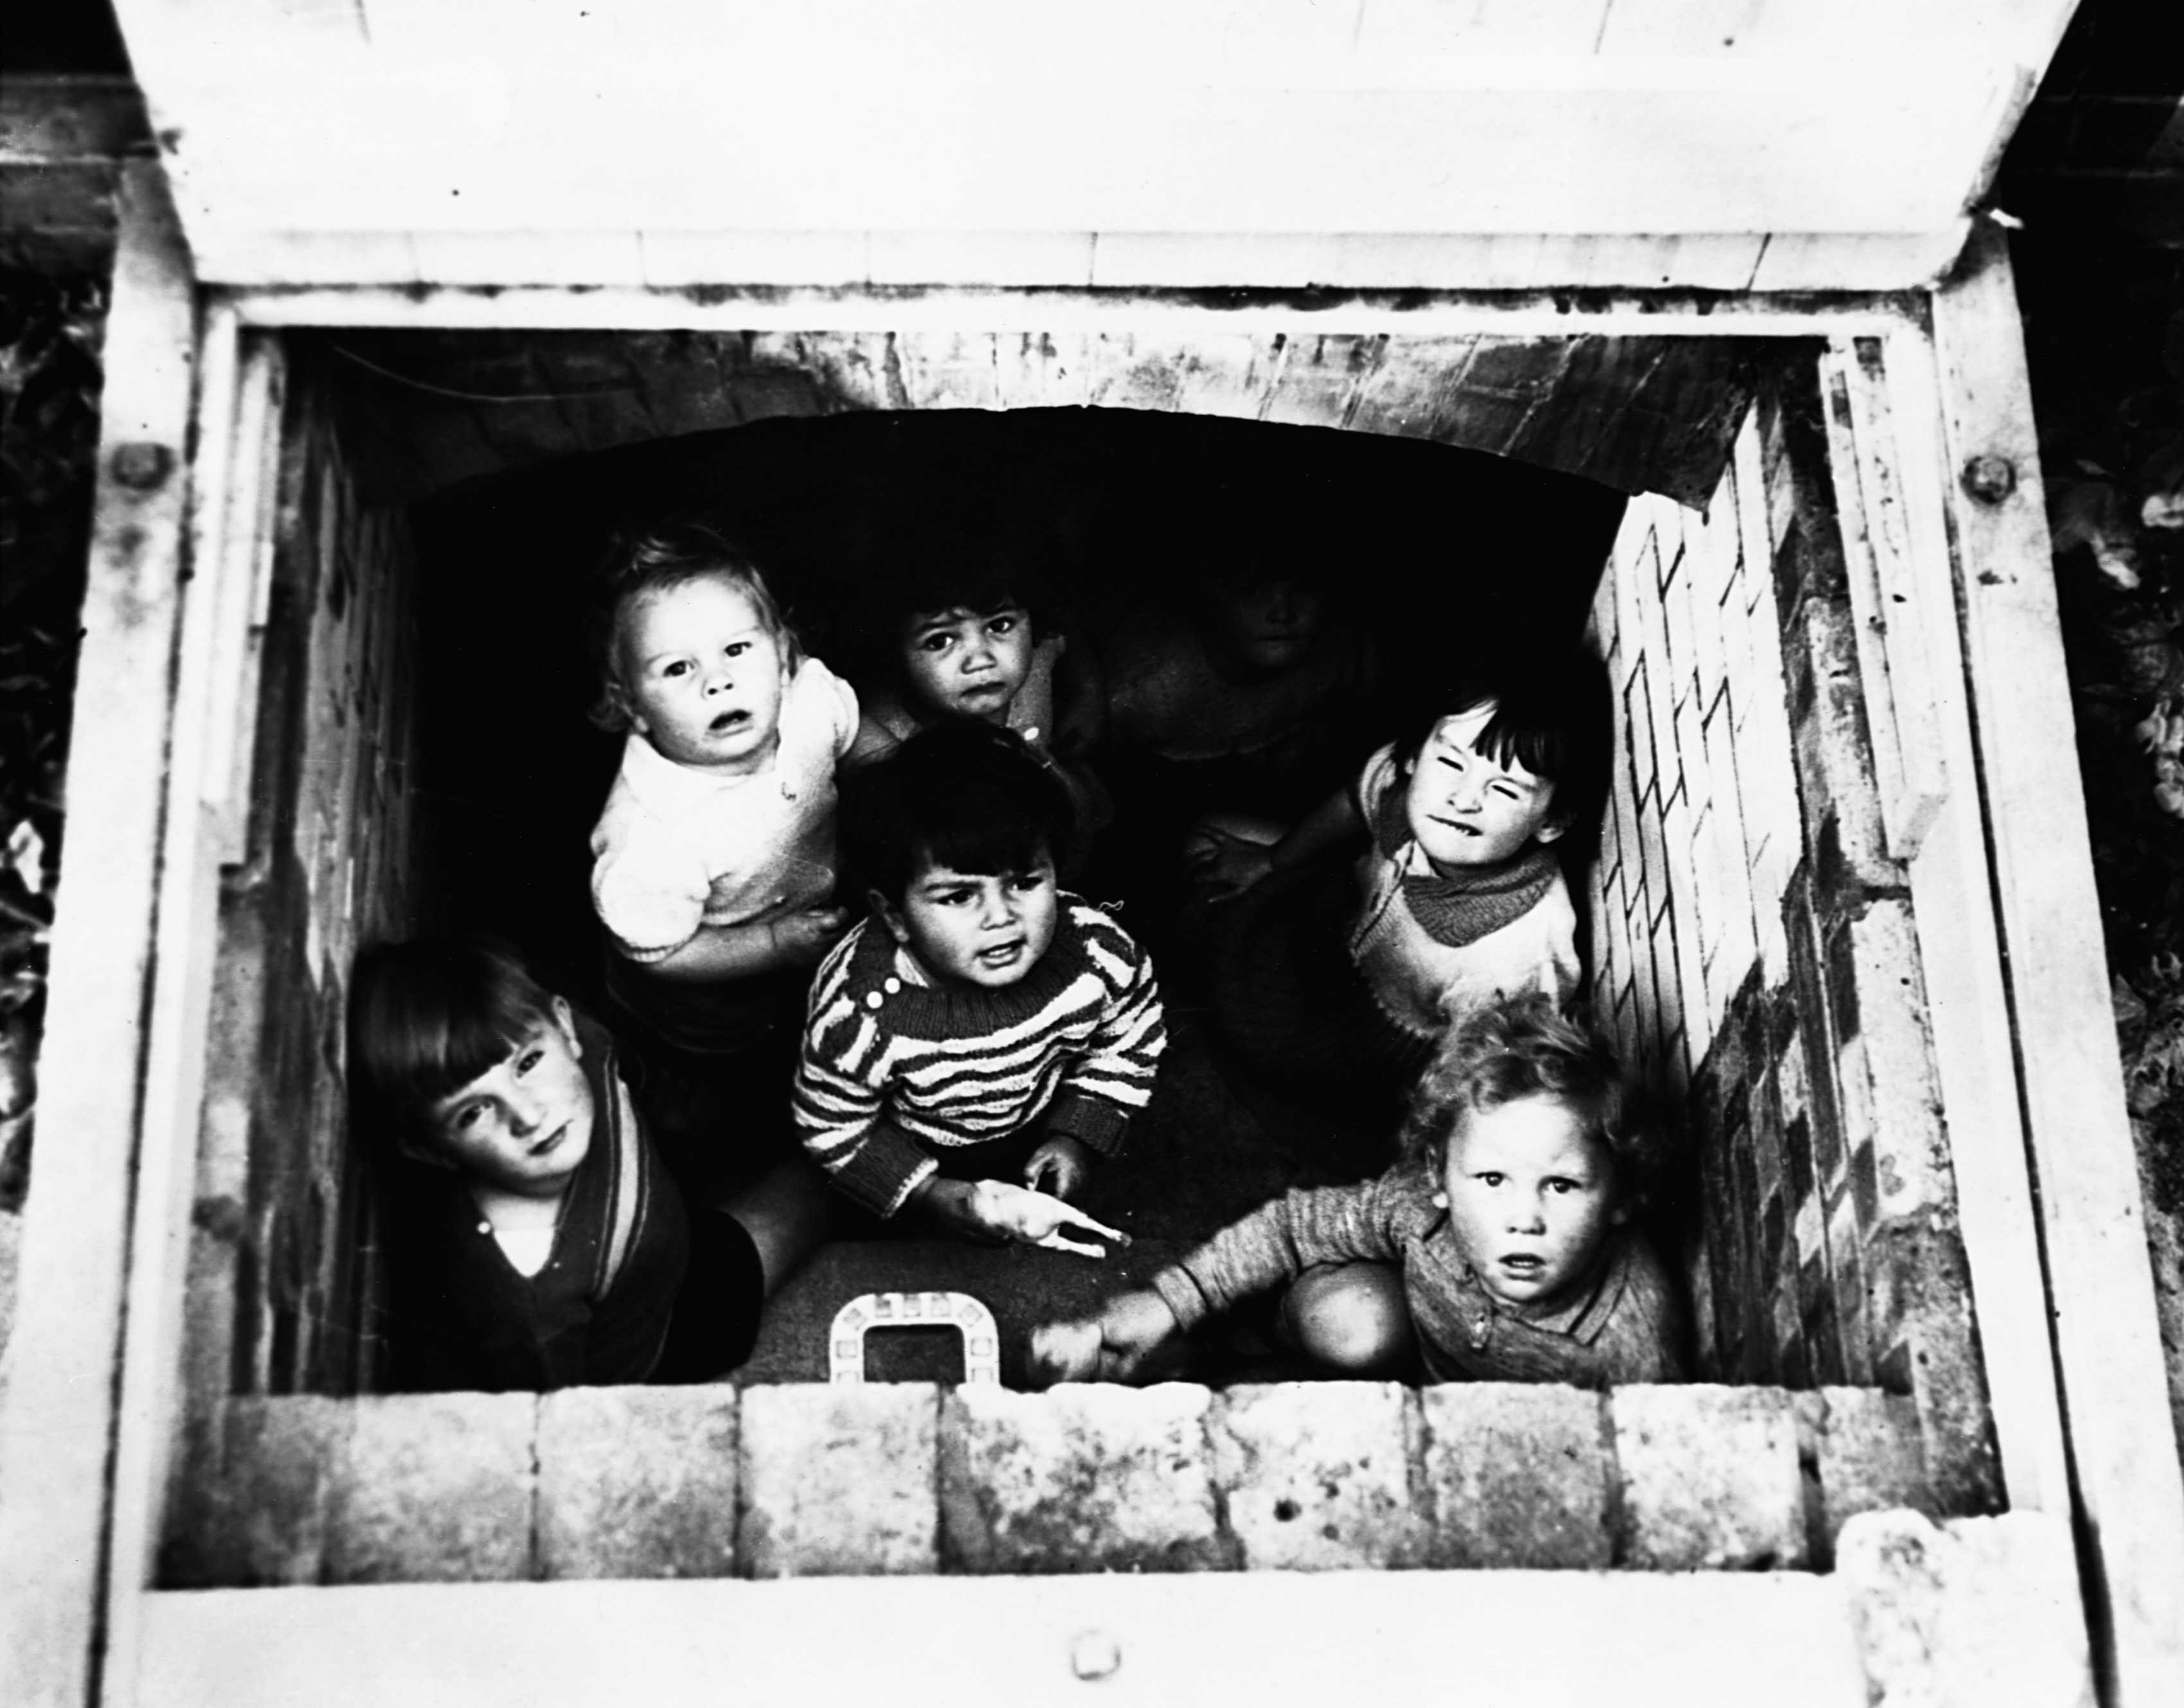 Народу в дом набилось. Под для детей. Дети войны в бомбоубежищах. Дети в подвале во время войны. Дети прячутся в подвале.